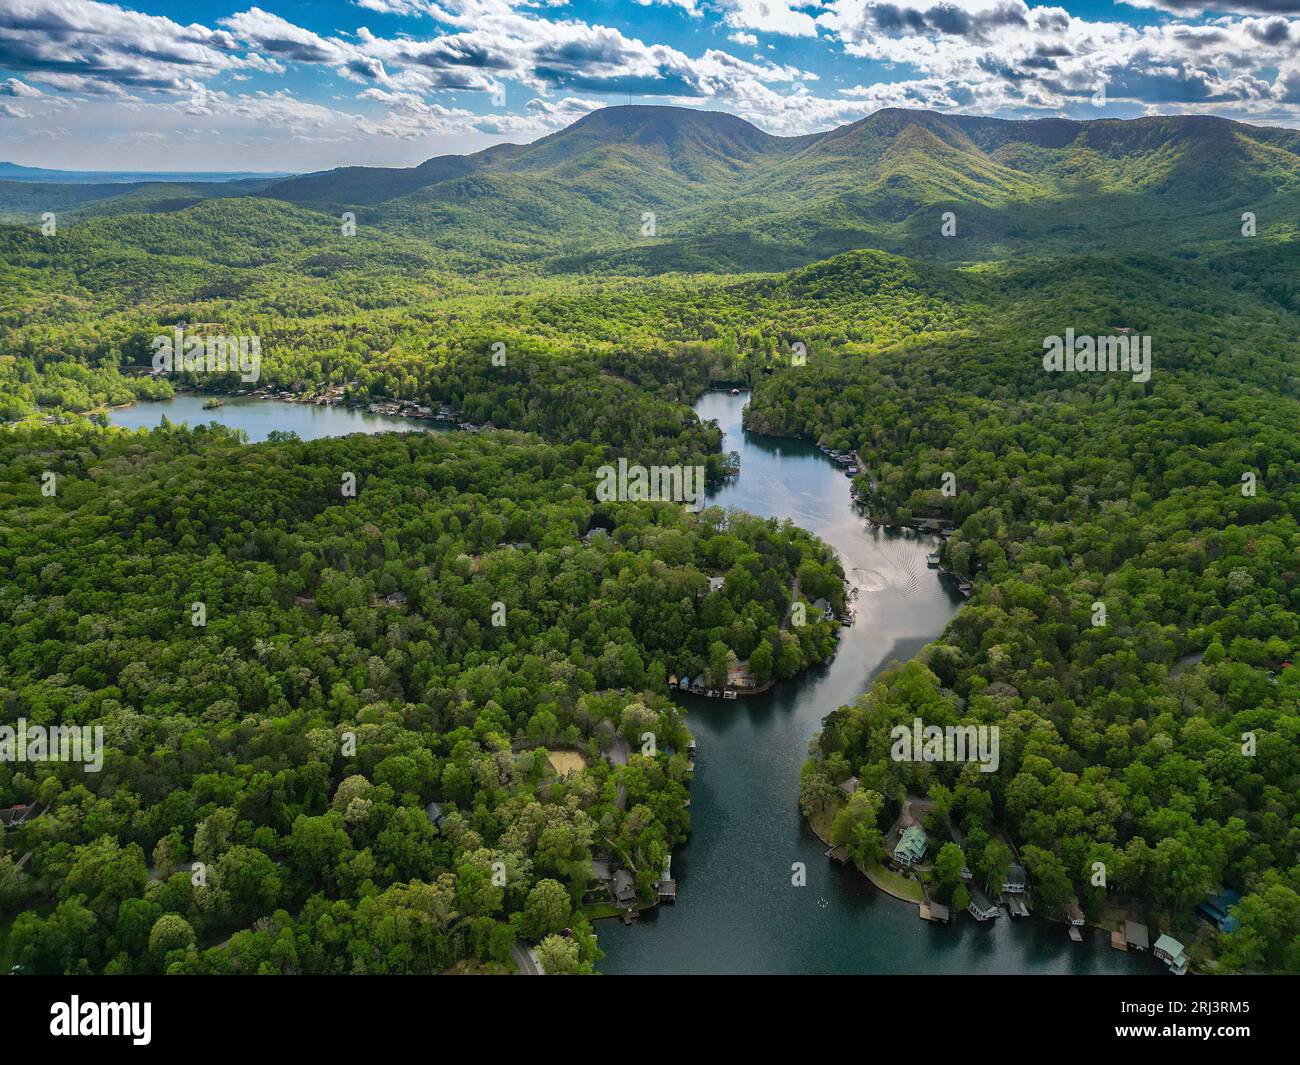 An aerial view of Lake Lanier in the mountains mountains of Georgia, USA Stock Photo